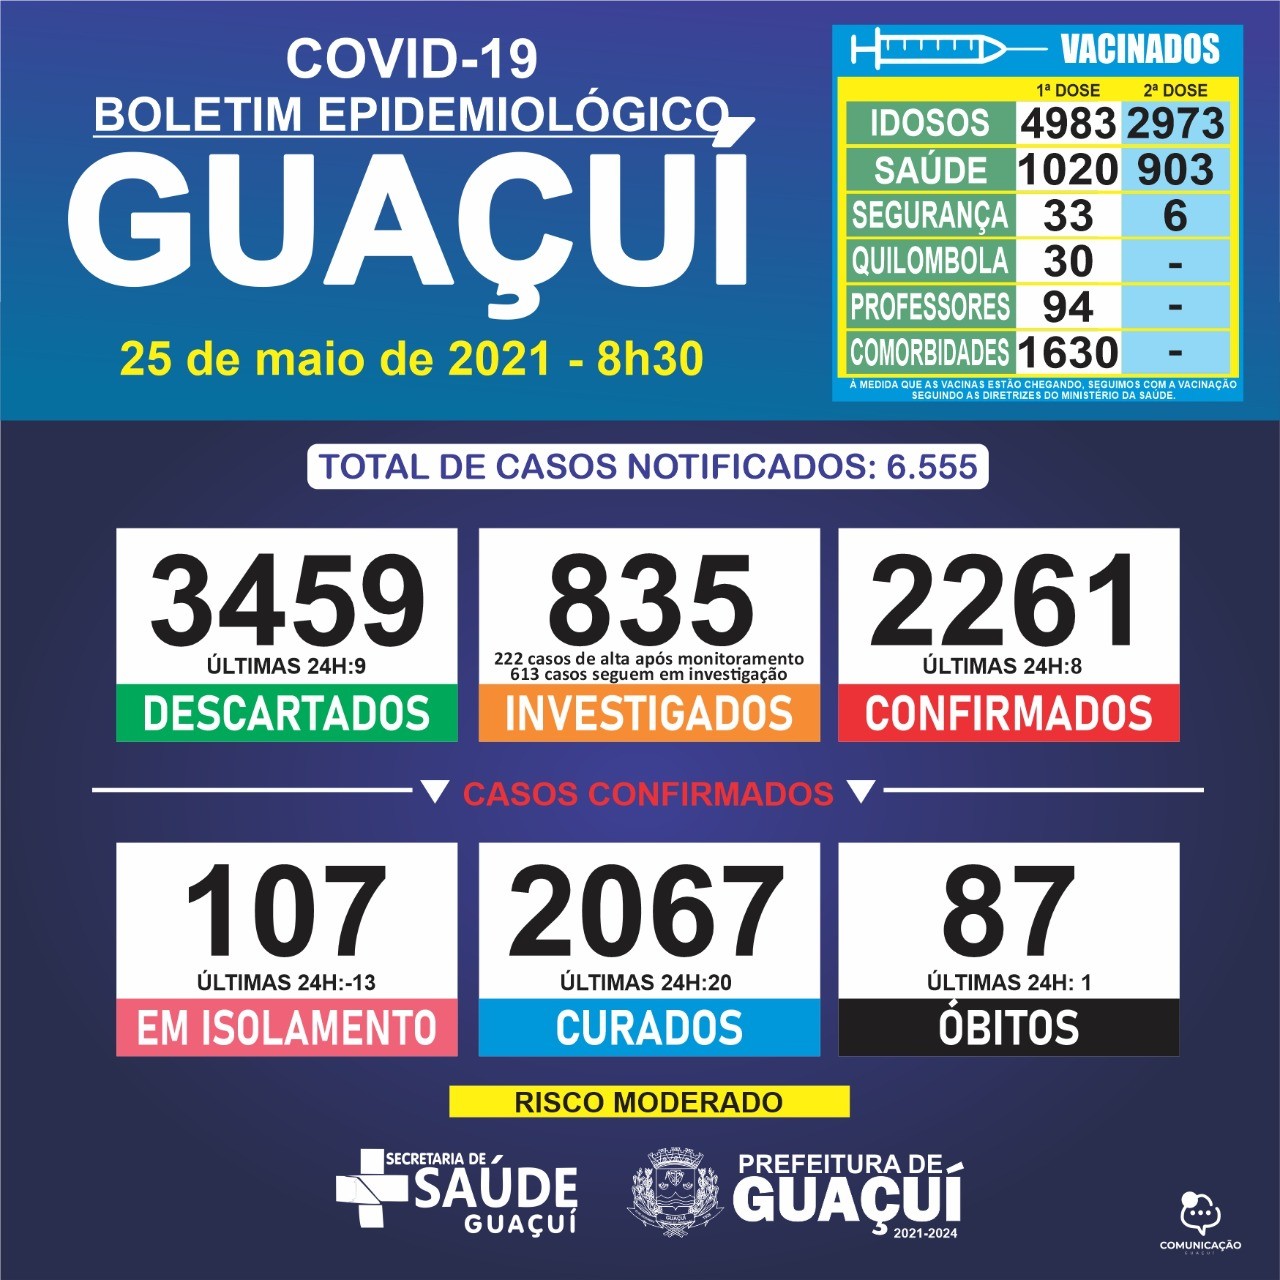 Boletim Epidemiológico 25/05/21: Guaçuí registra 1 óbito, 8 casos confirmados e 20 curados de Covid-19